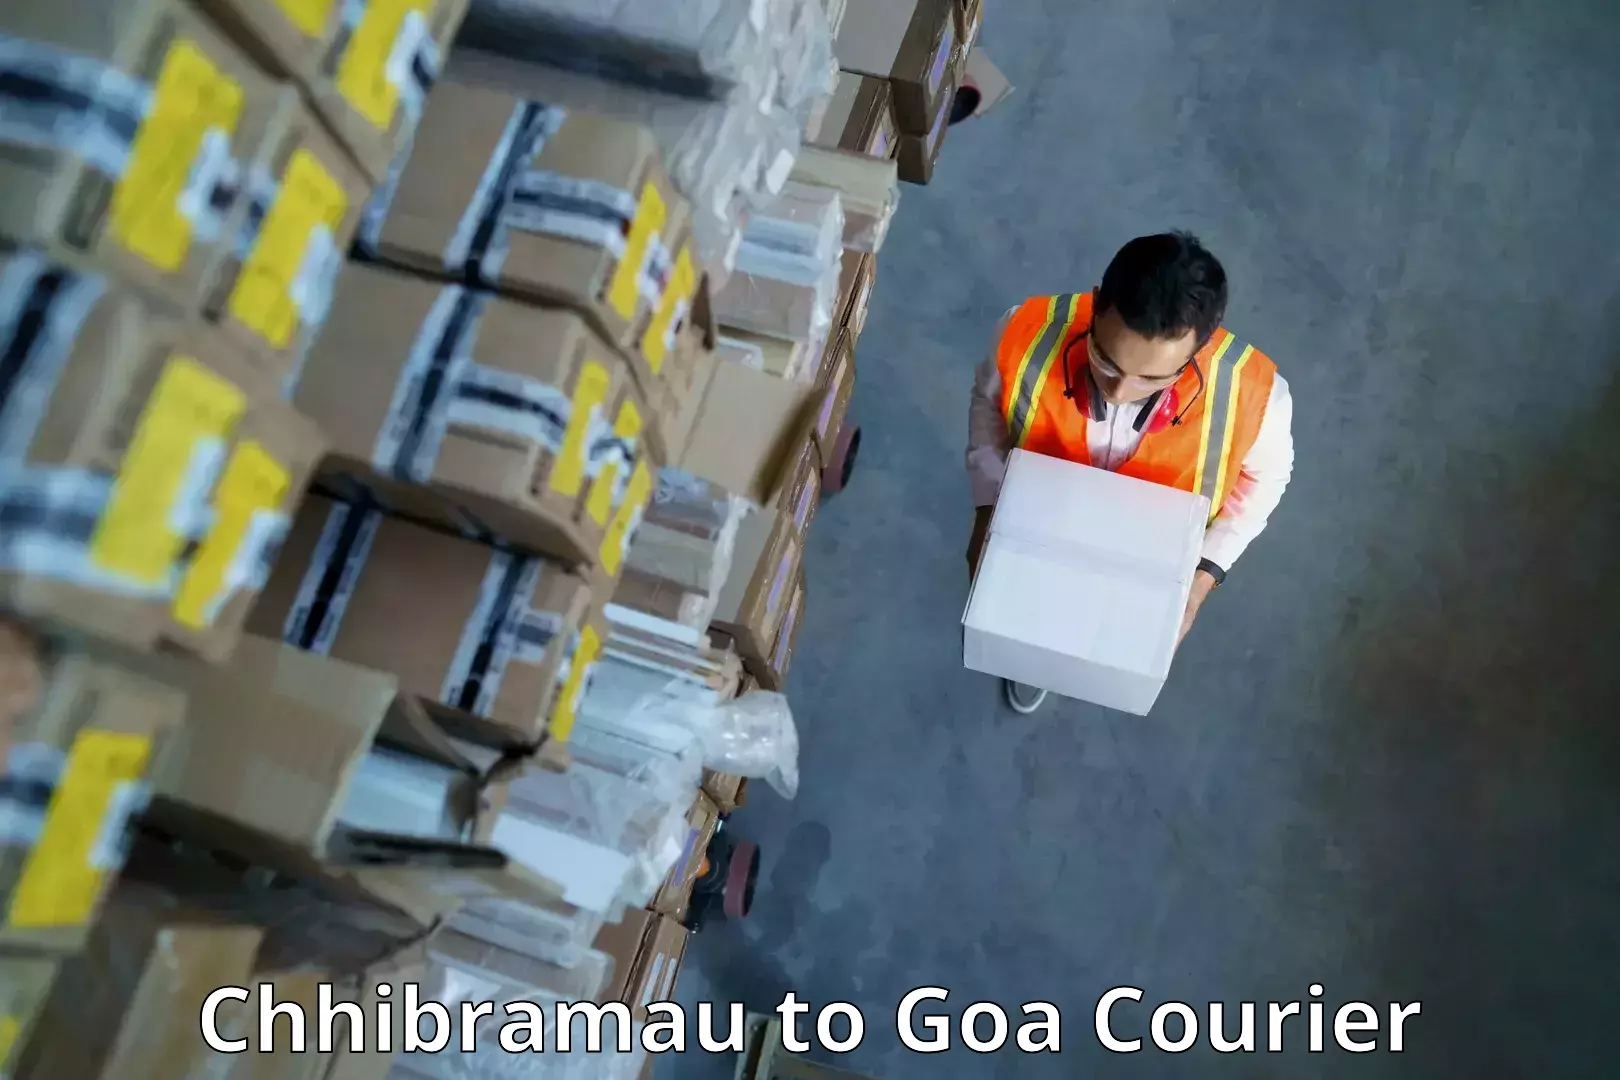 Efficient freight service Chhibramau to IIT Goa